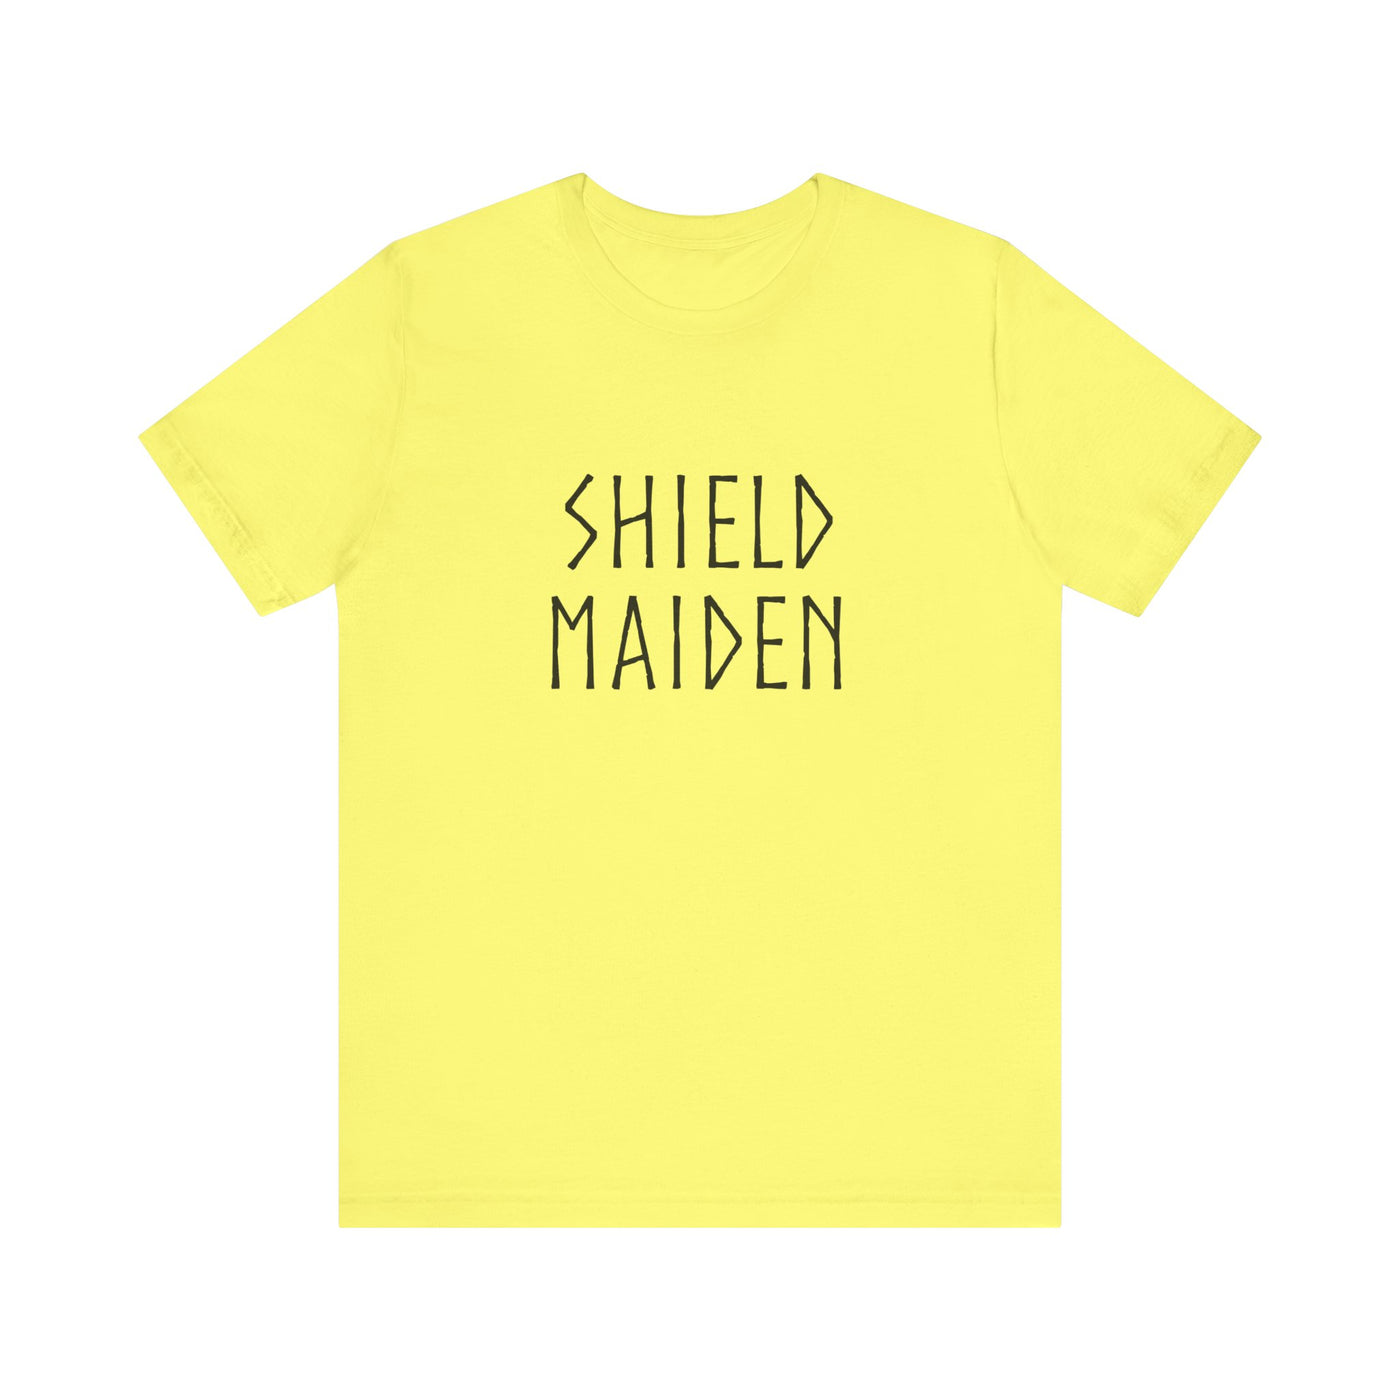 Shield Maiden Unisex T-Shirt